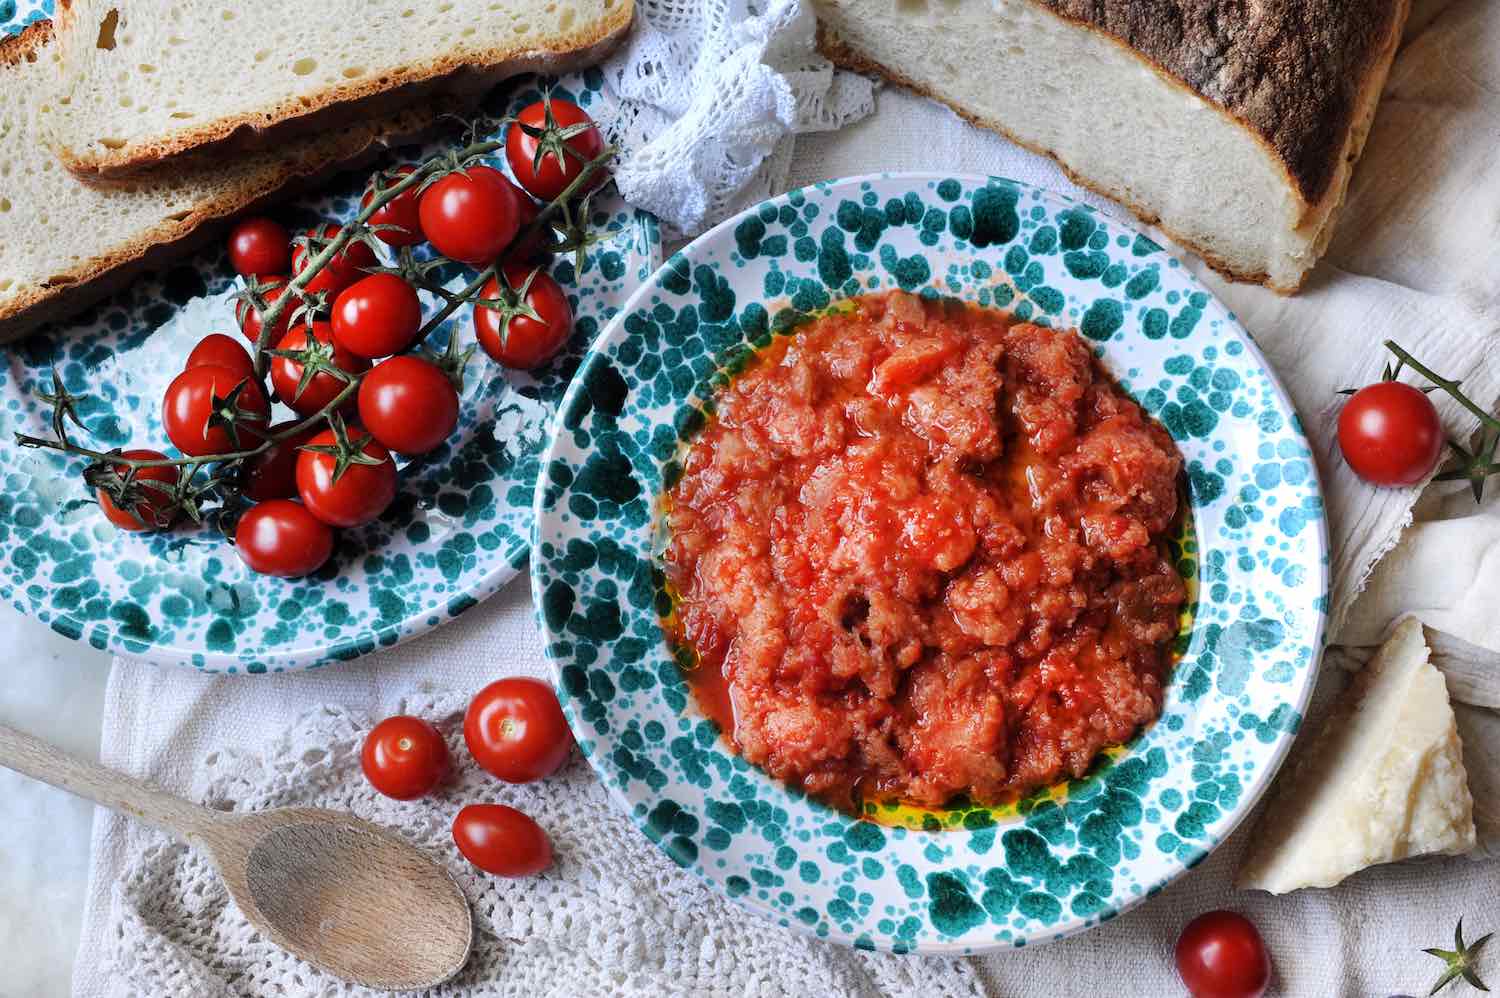 La pappa al pomodoro è un piatto fiorentino che si può gustare in una delle meravigliose trattorie tipiche di Firenze